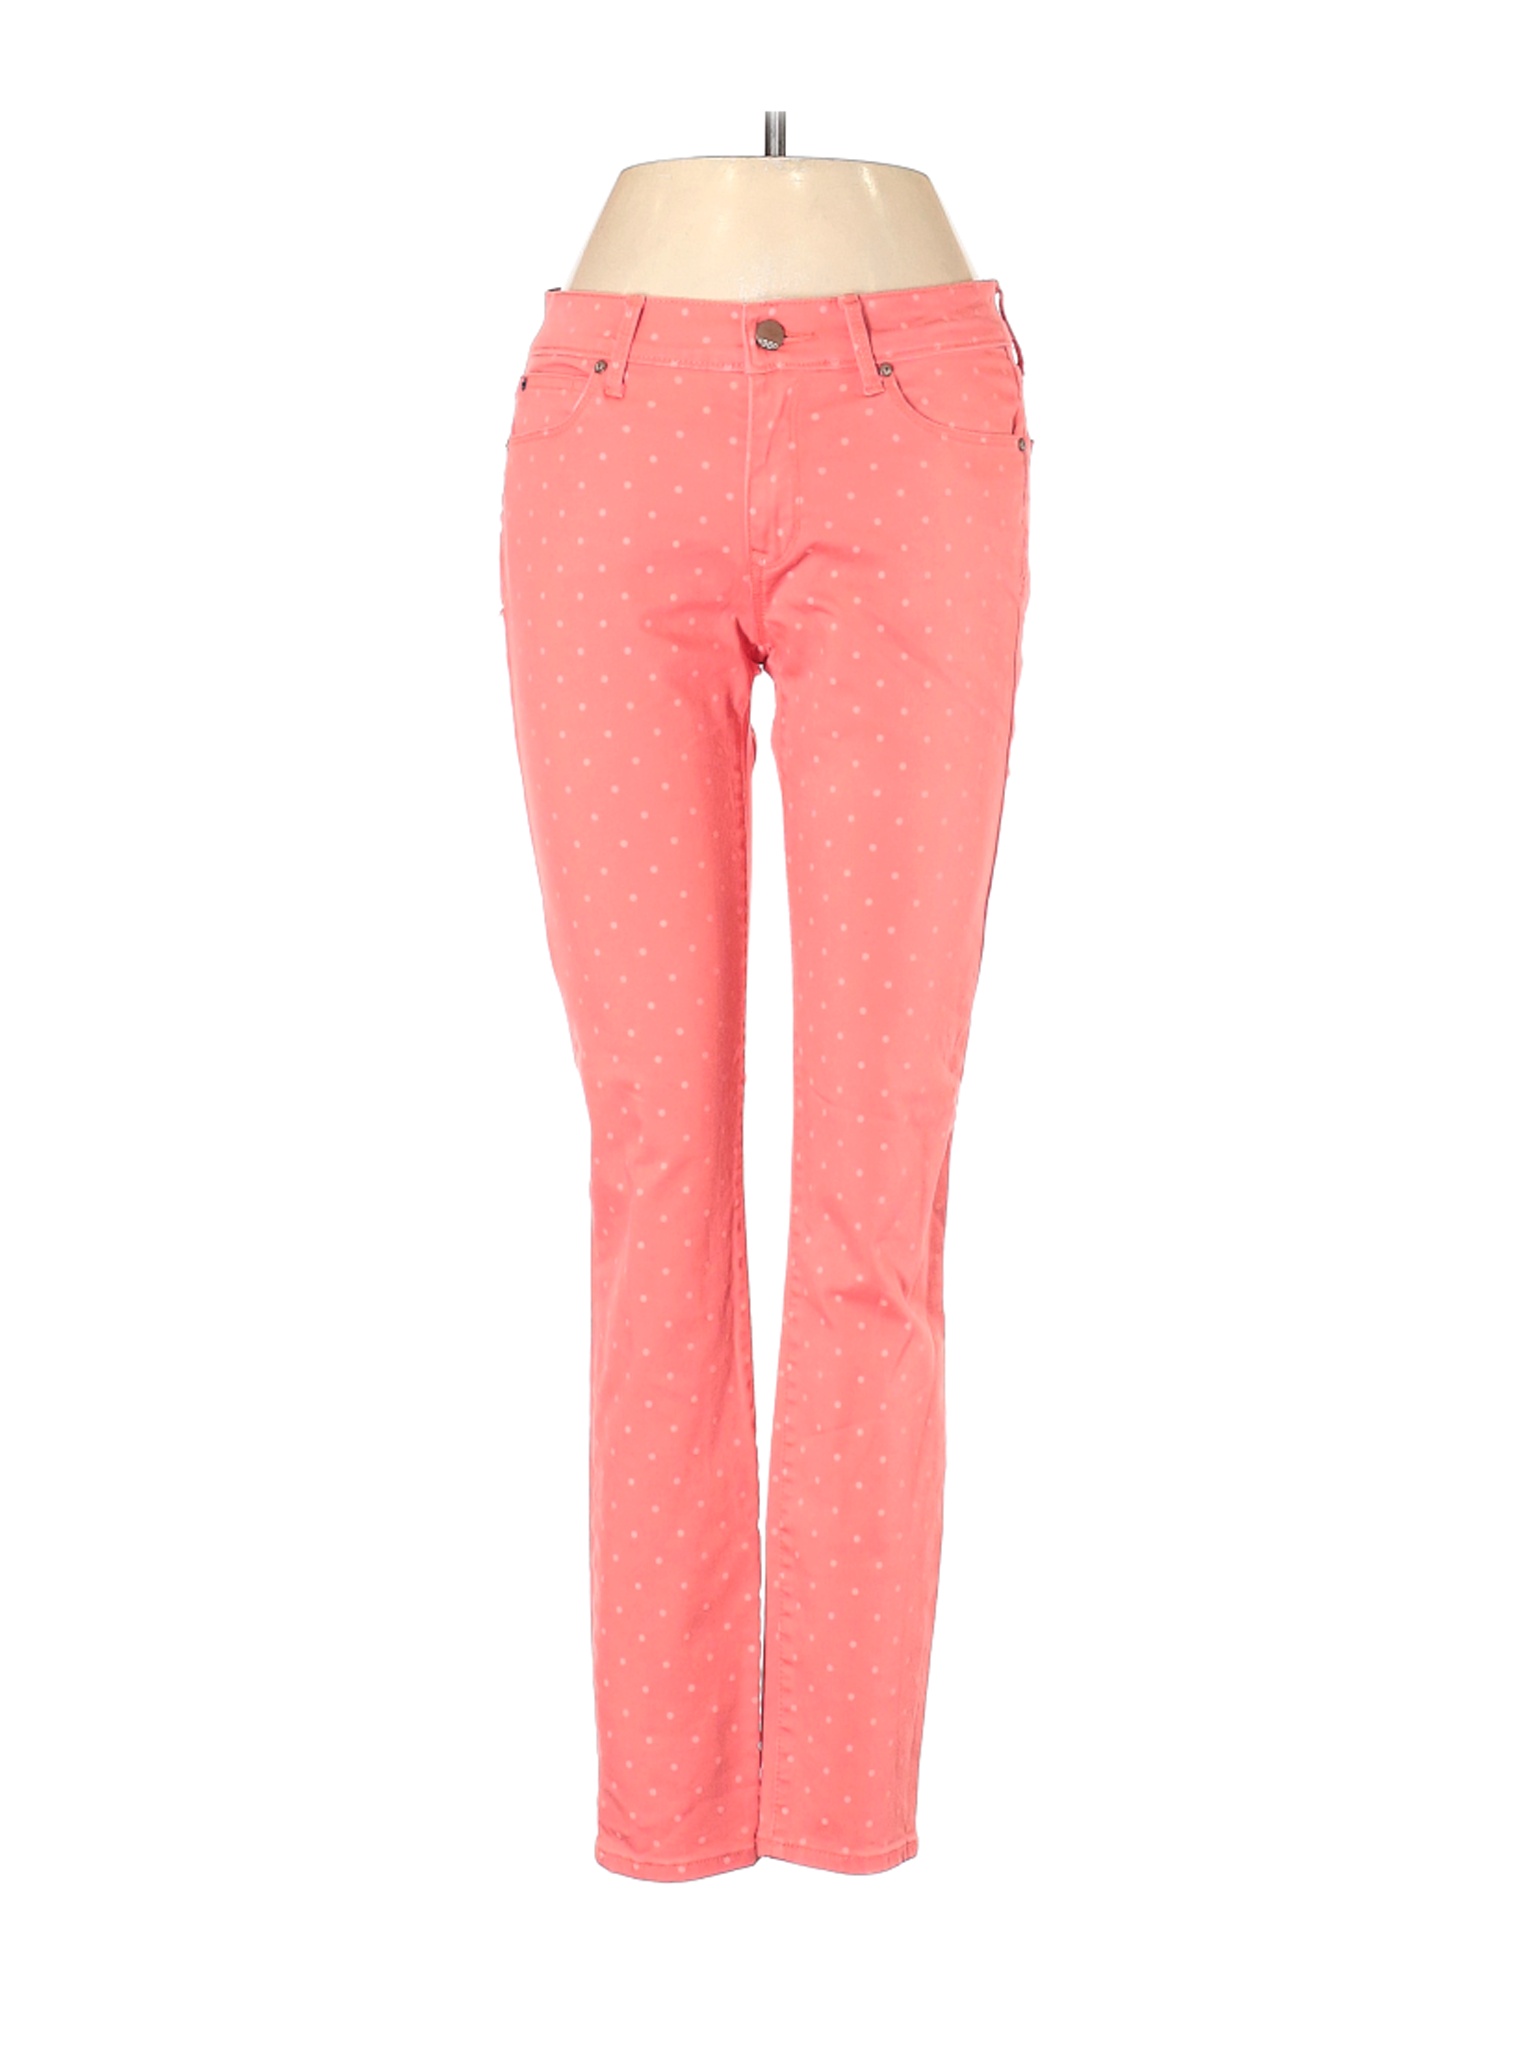 Gap Women Pink Jeans 24W | eBay